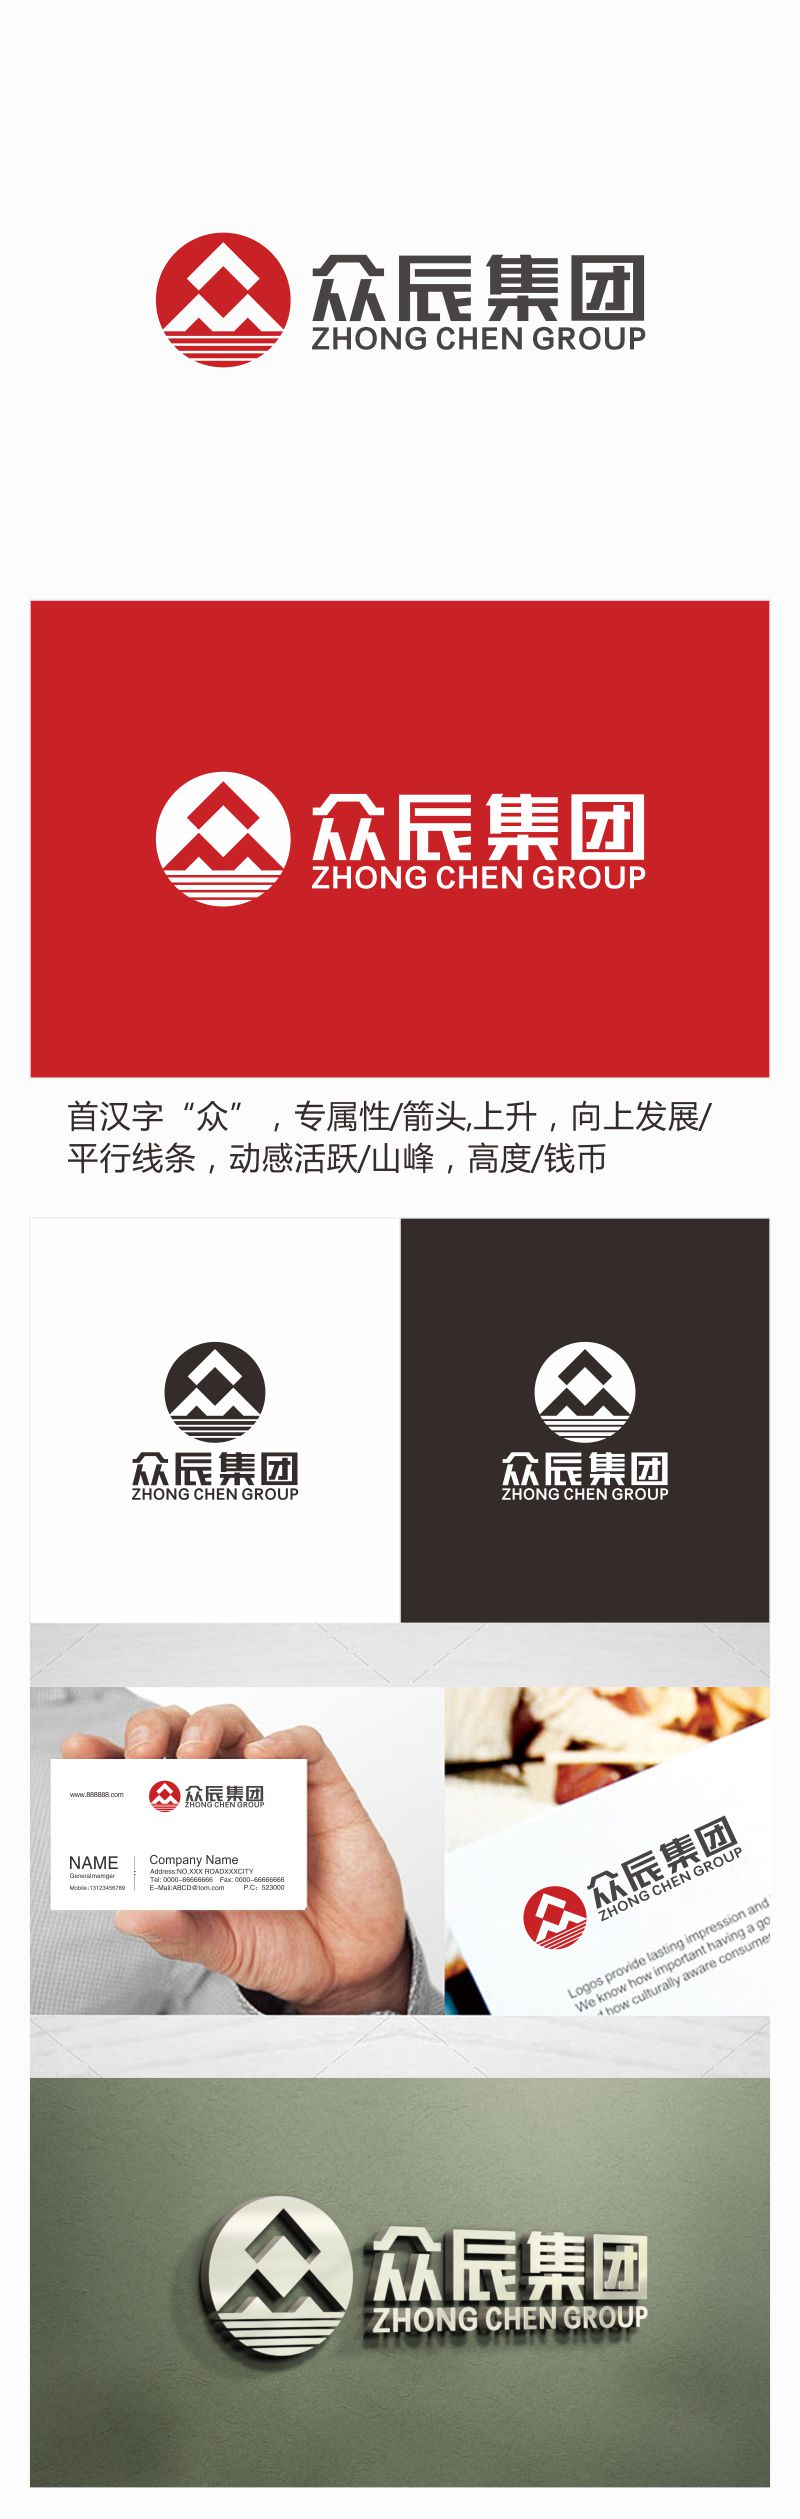 刘小勇的众辰集团logo设计